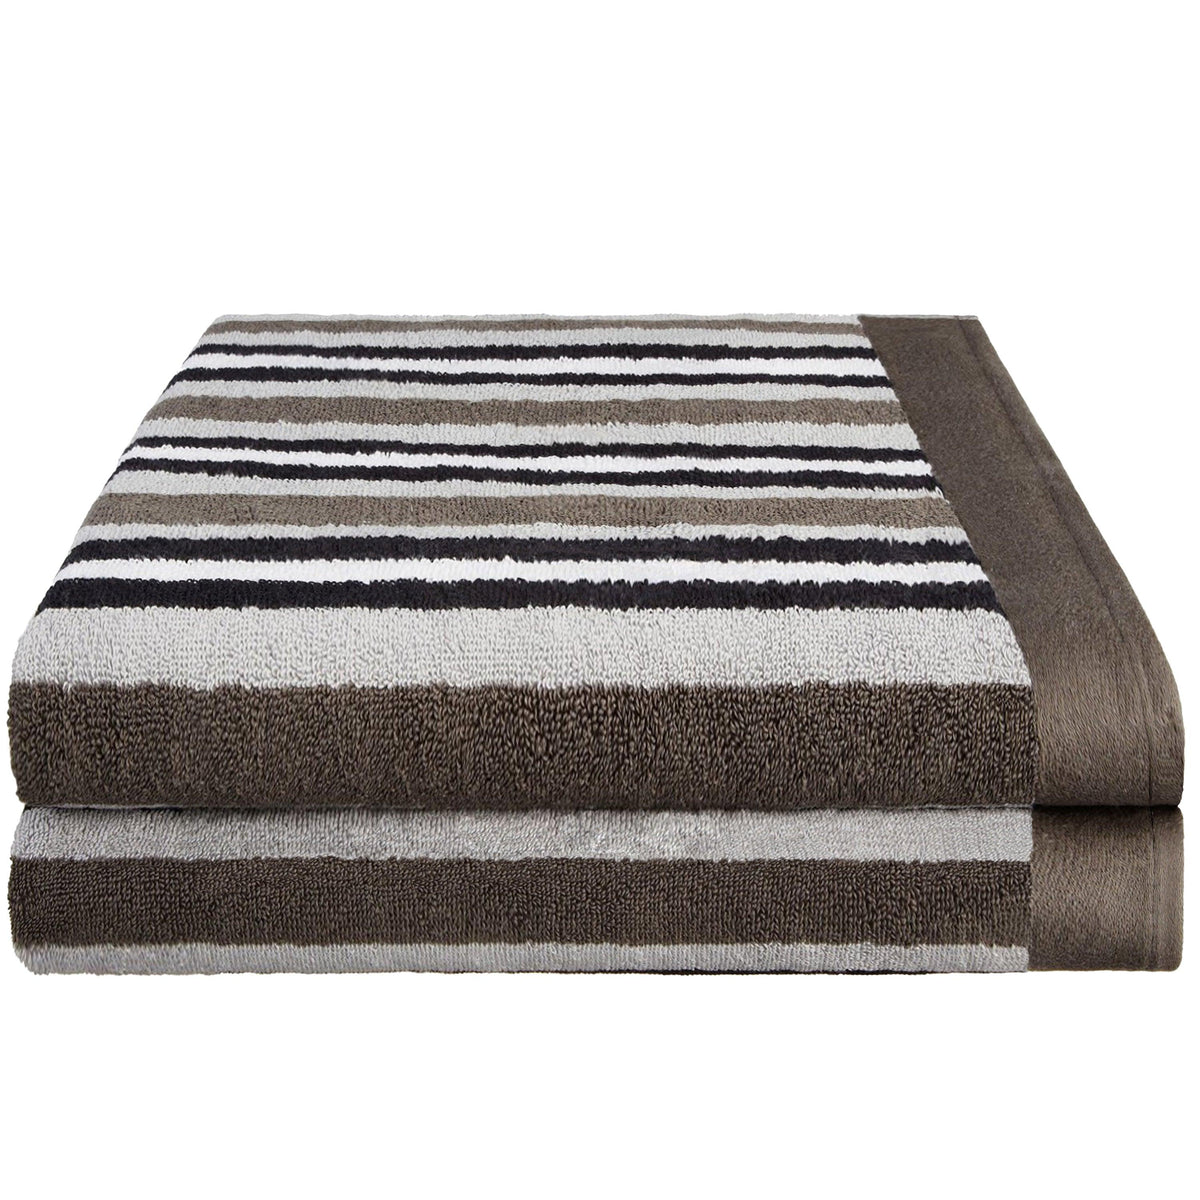 Cotton Striped Medium Weight 2 Piece Bath Sheet Set - Charcoal